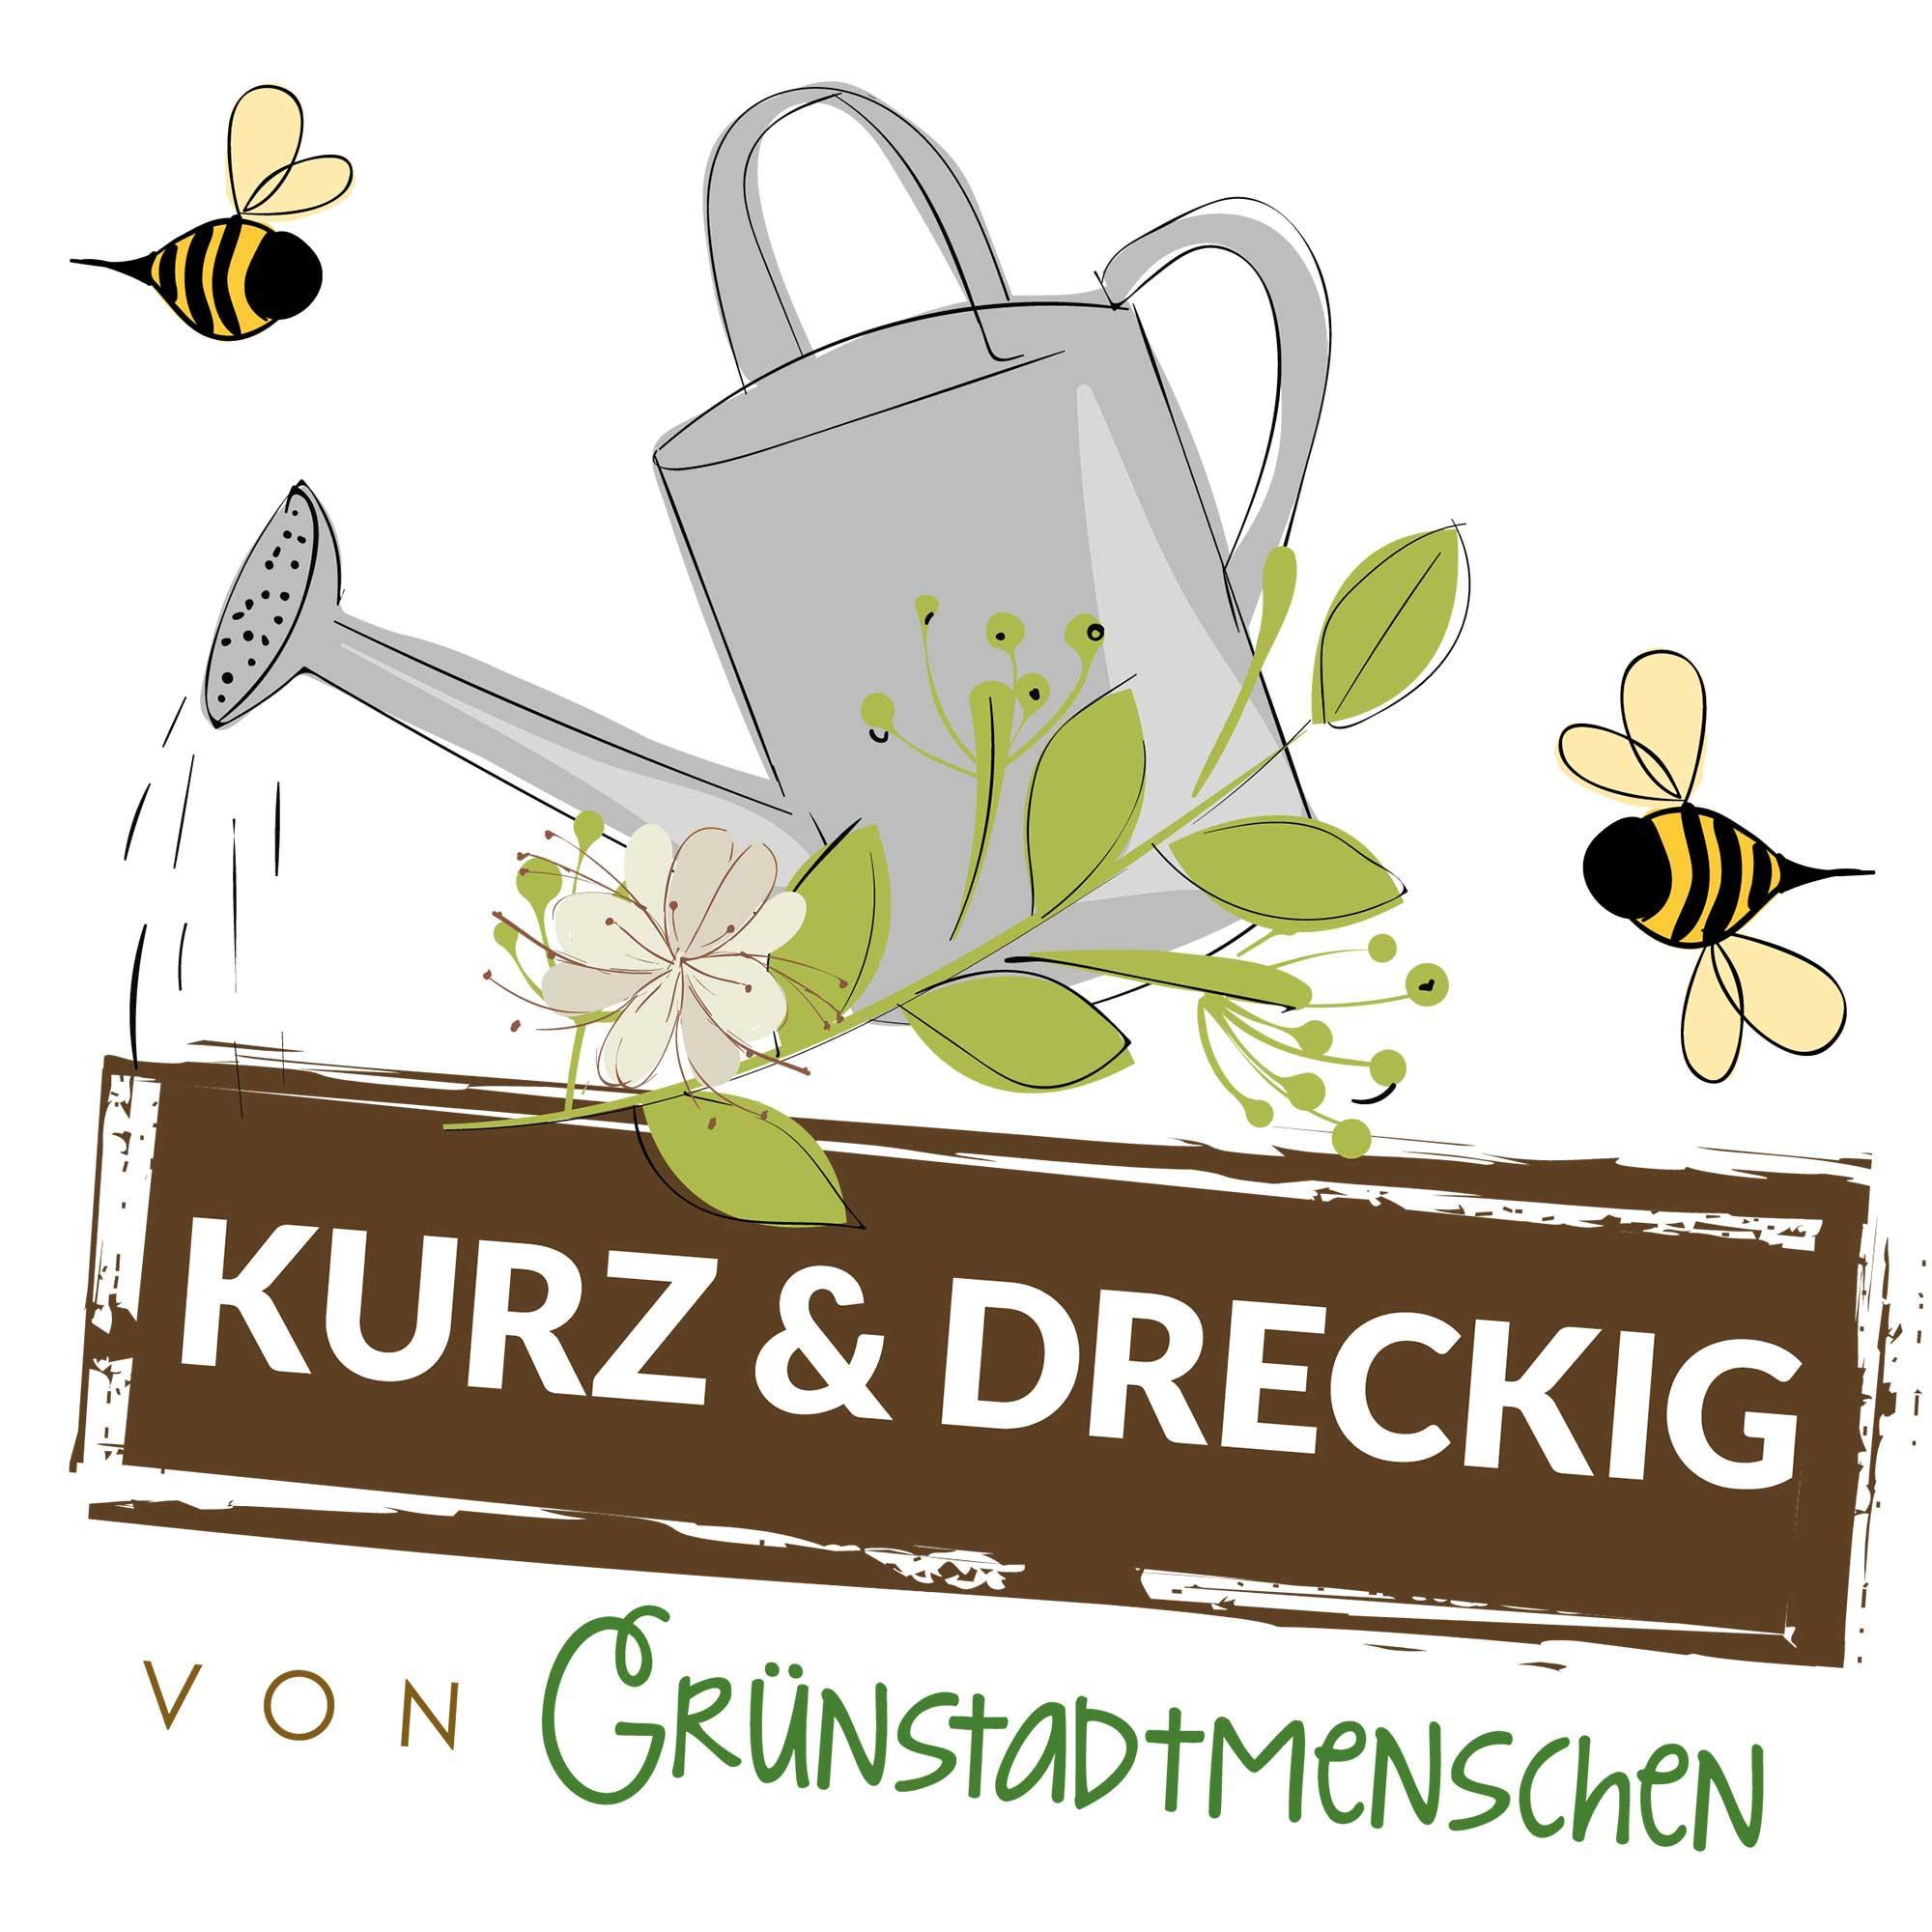 #99 Kurz & dreckig: Karinas Gartentipps für den Oktober